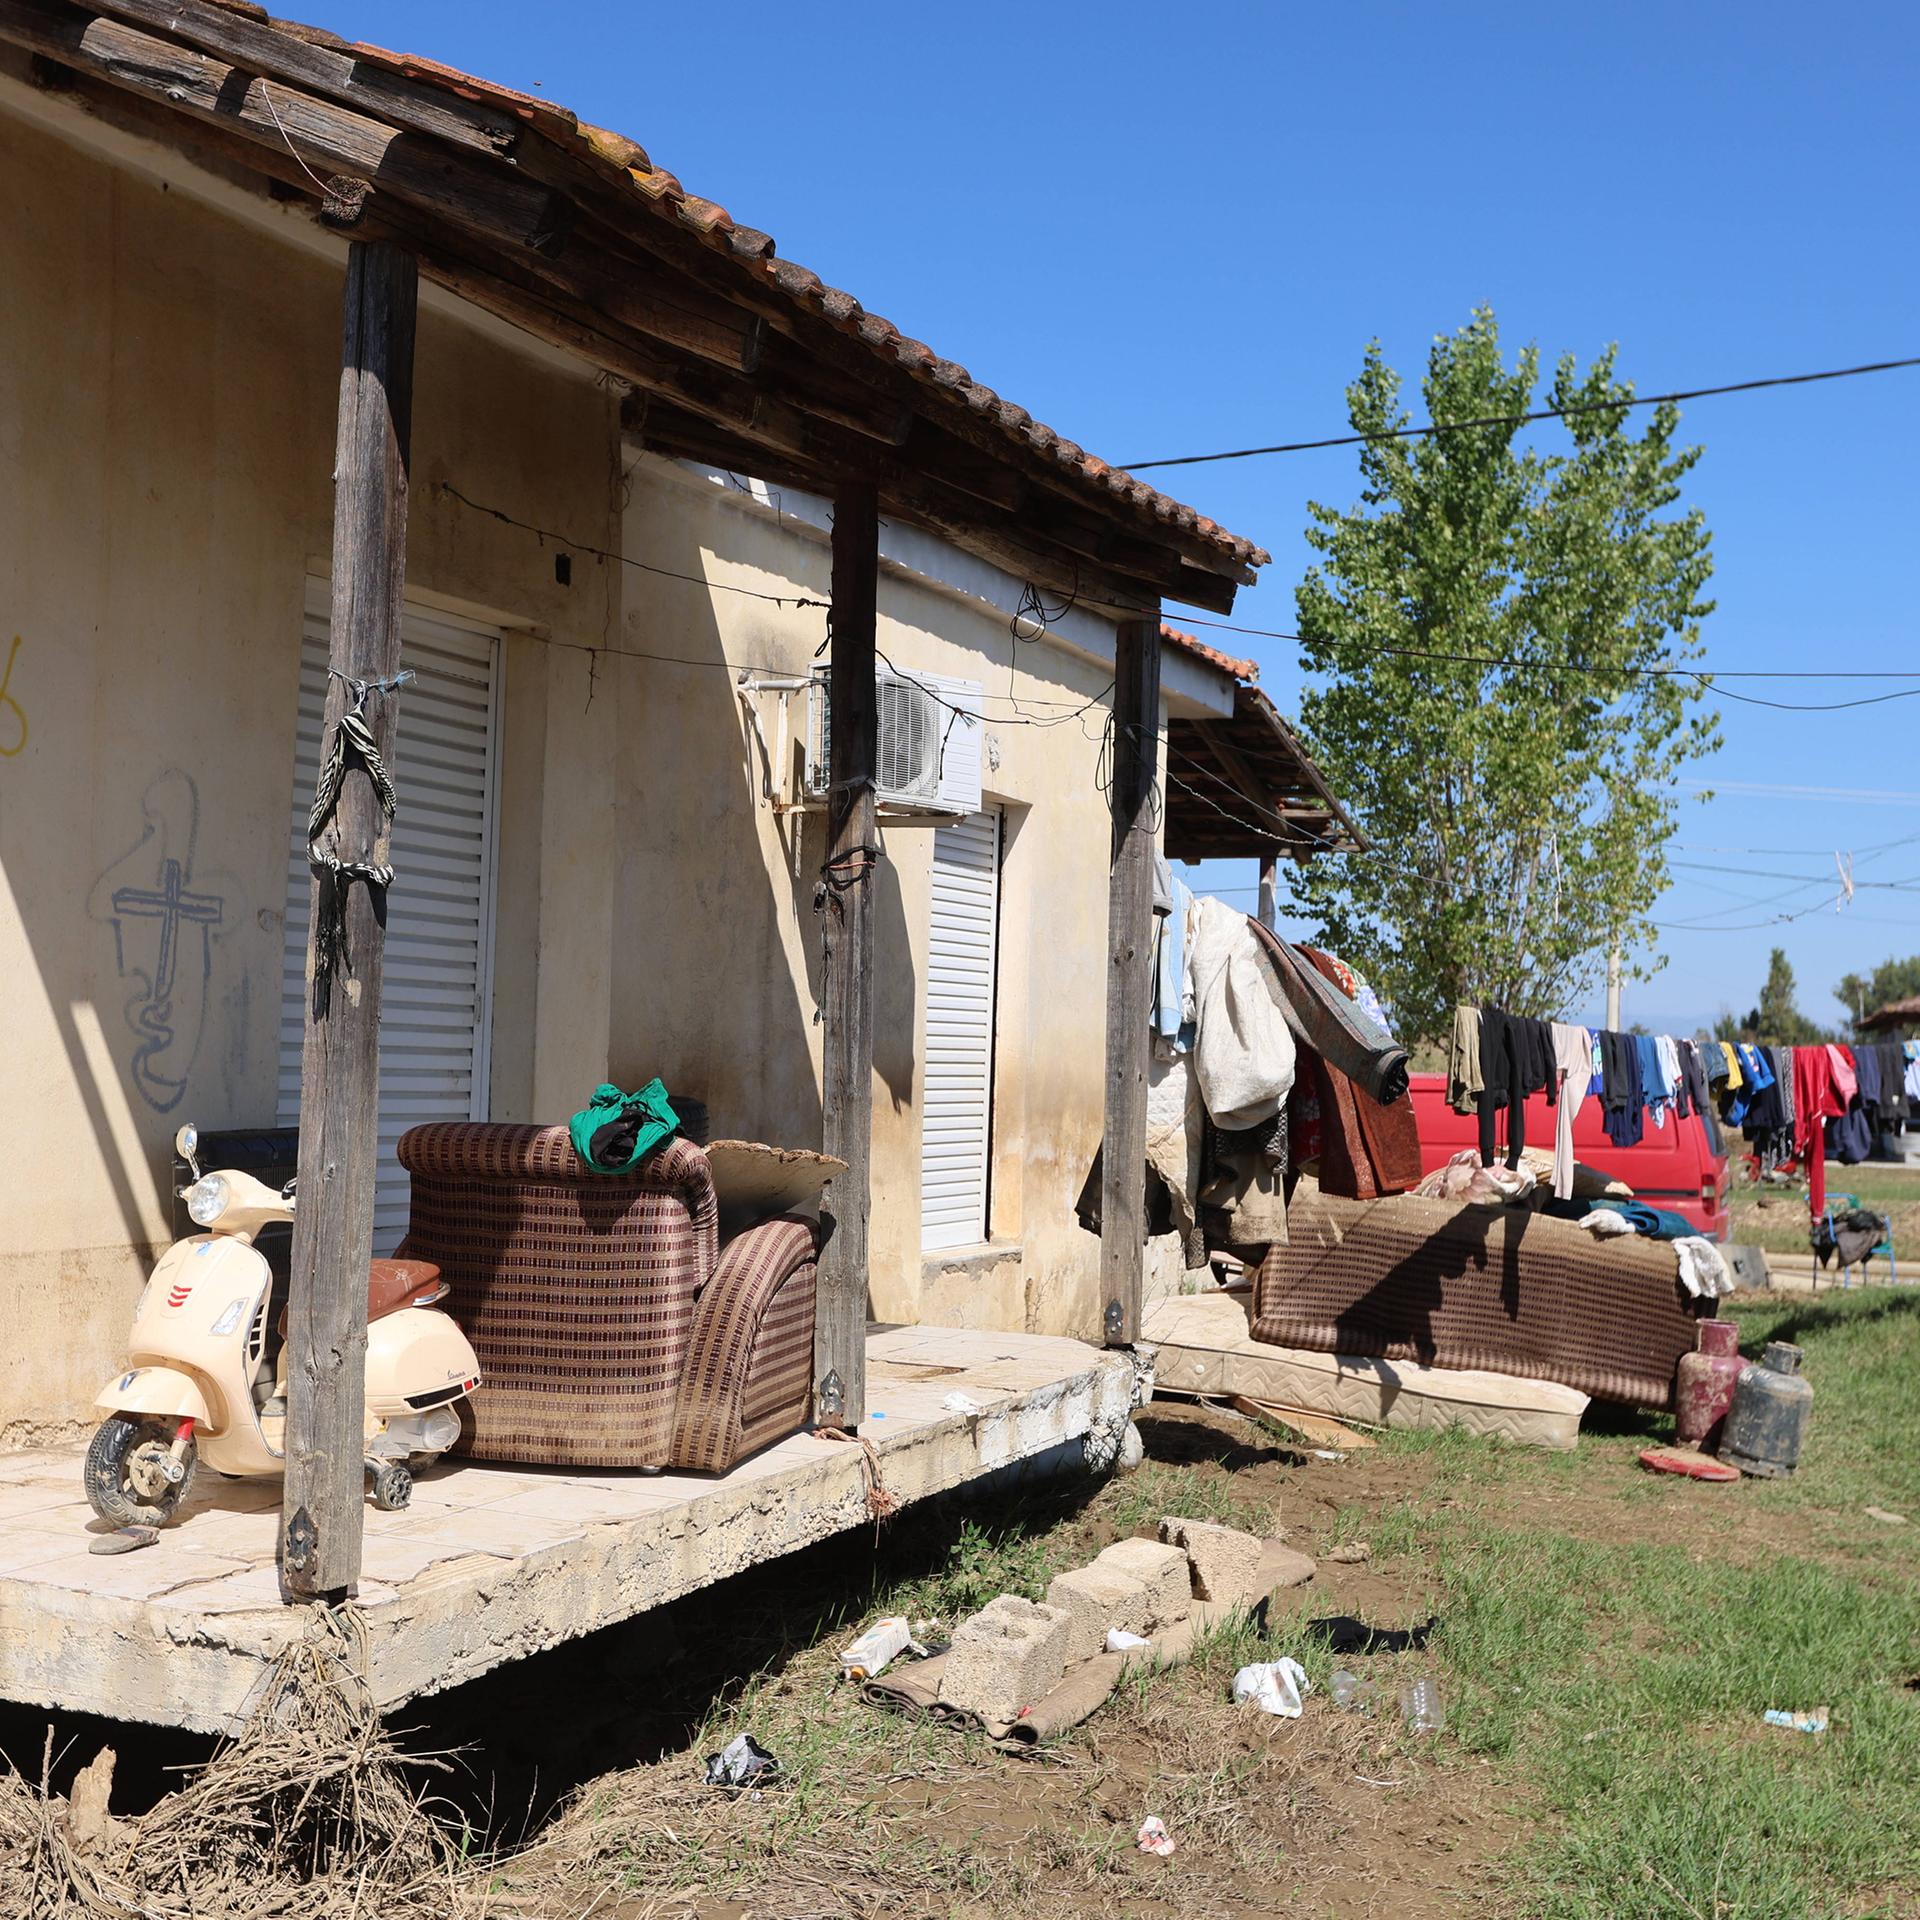 Roma in Griechenland - Leben am Rand der Gesellschaft